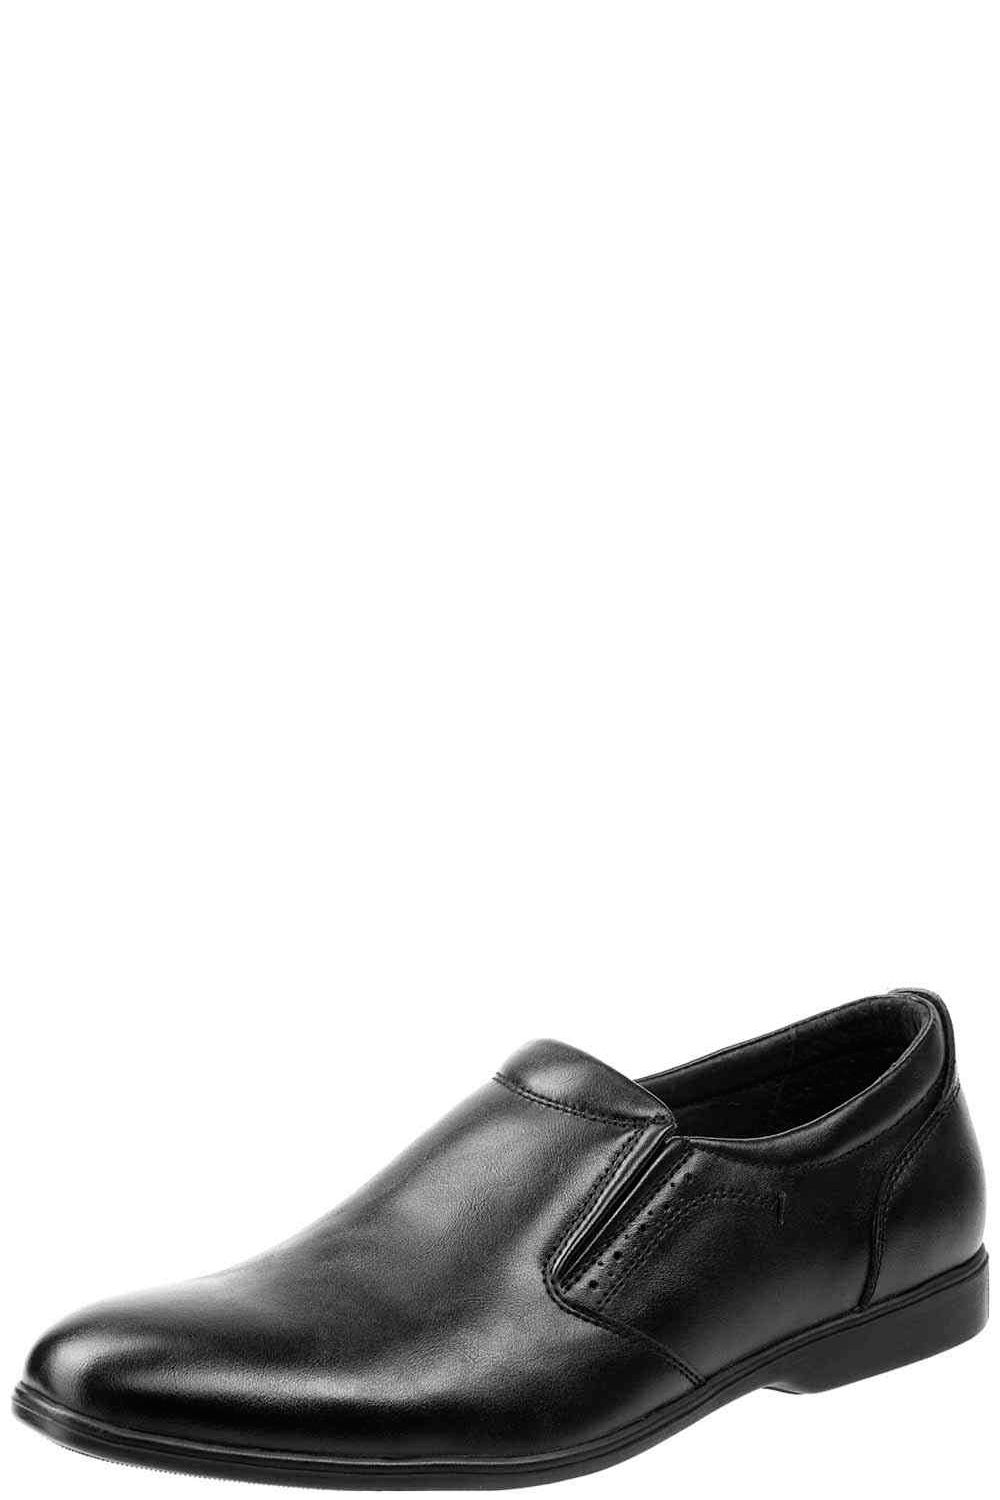 Туфли Keddo, размер 35, цвет черный - фото 1